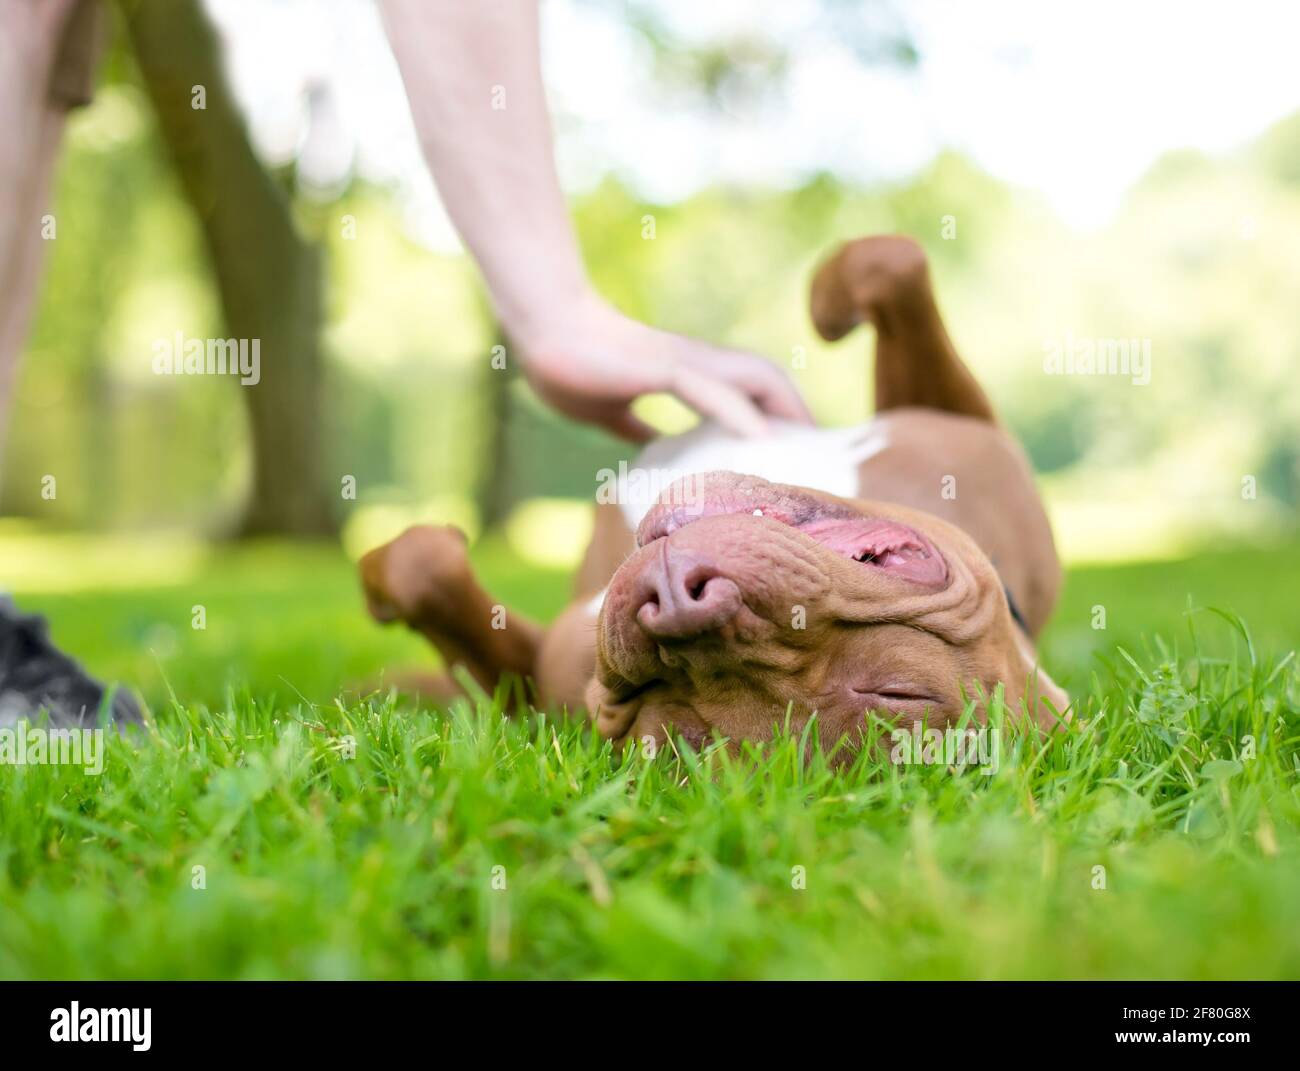 Chien mixte Pit Bull Terrier rouge et blanc couché à l'envers dans l'herbe pendant qu'une personne frotte son ventre Banque D'Images